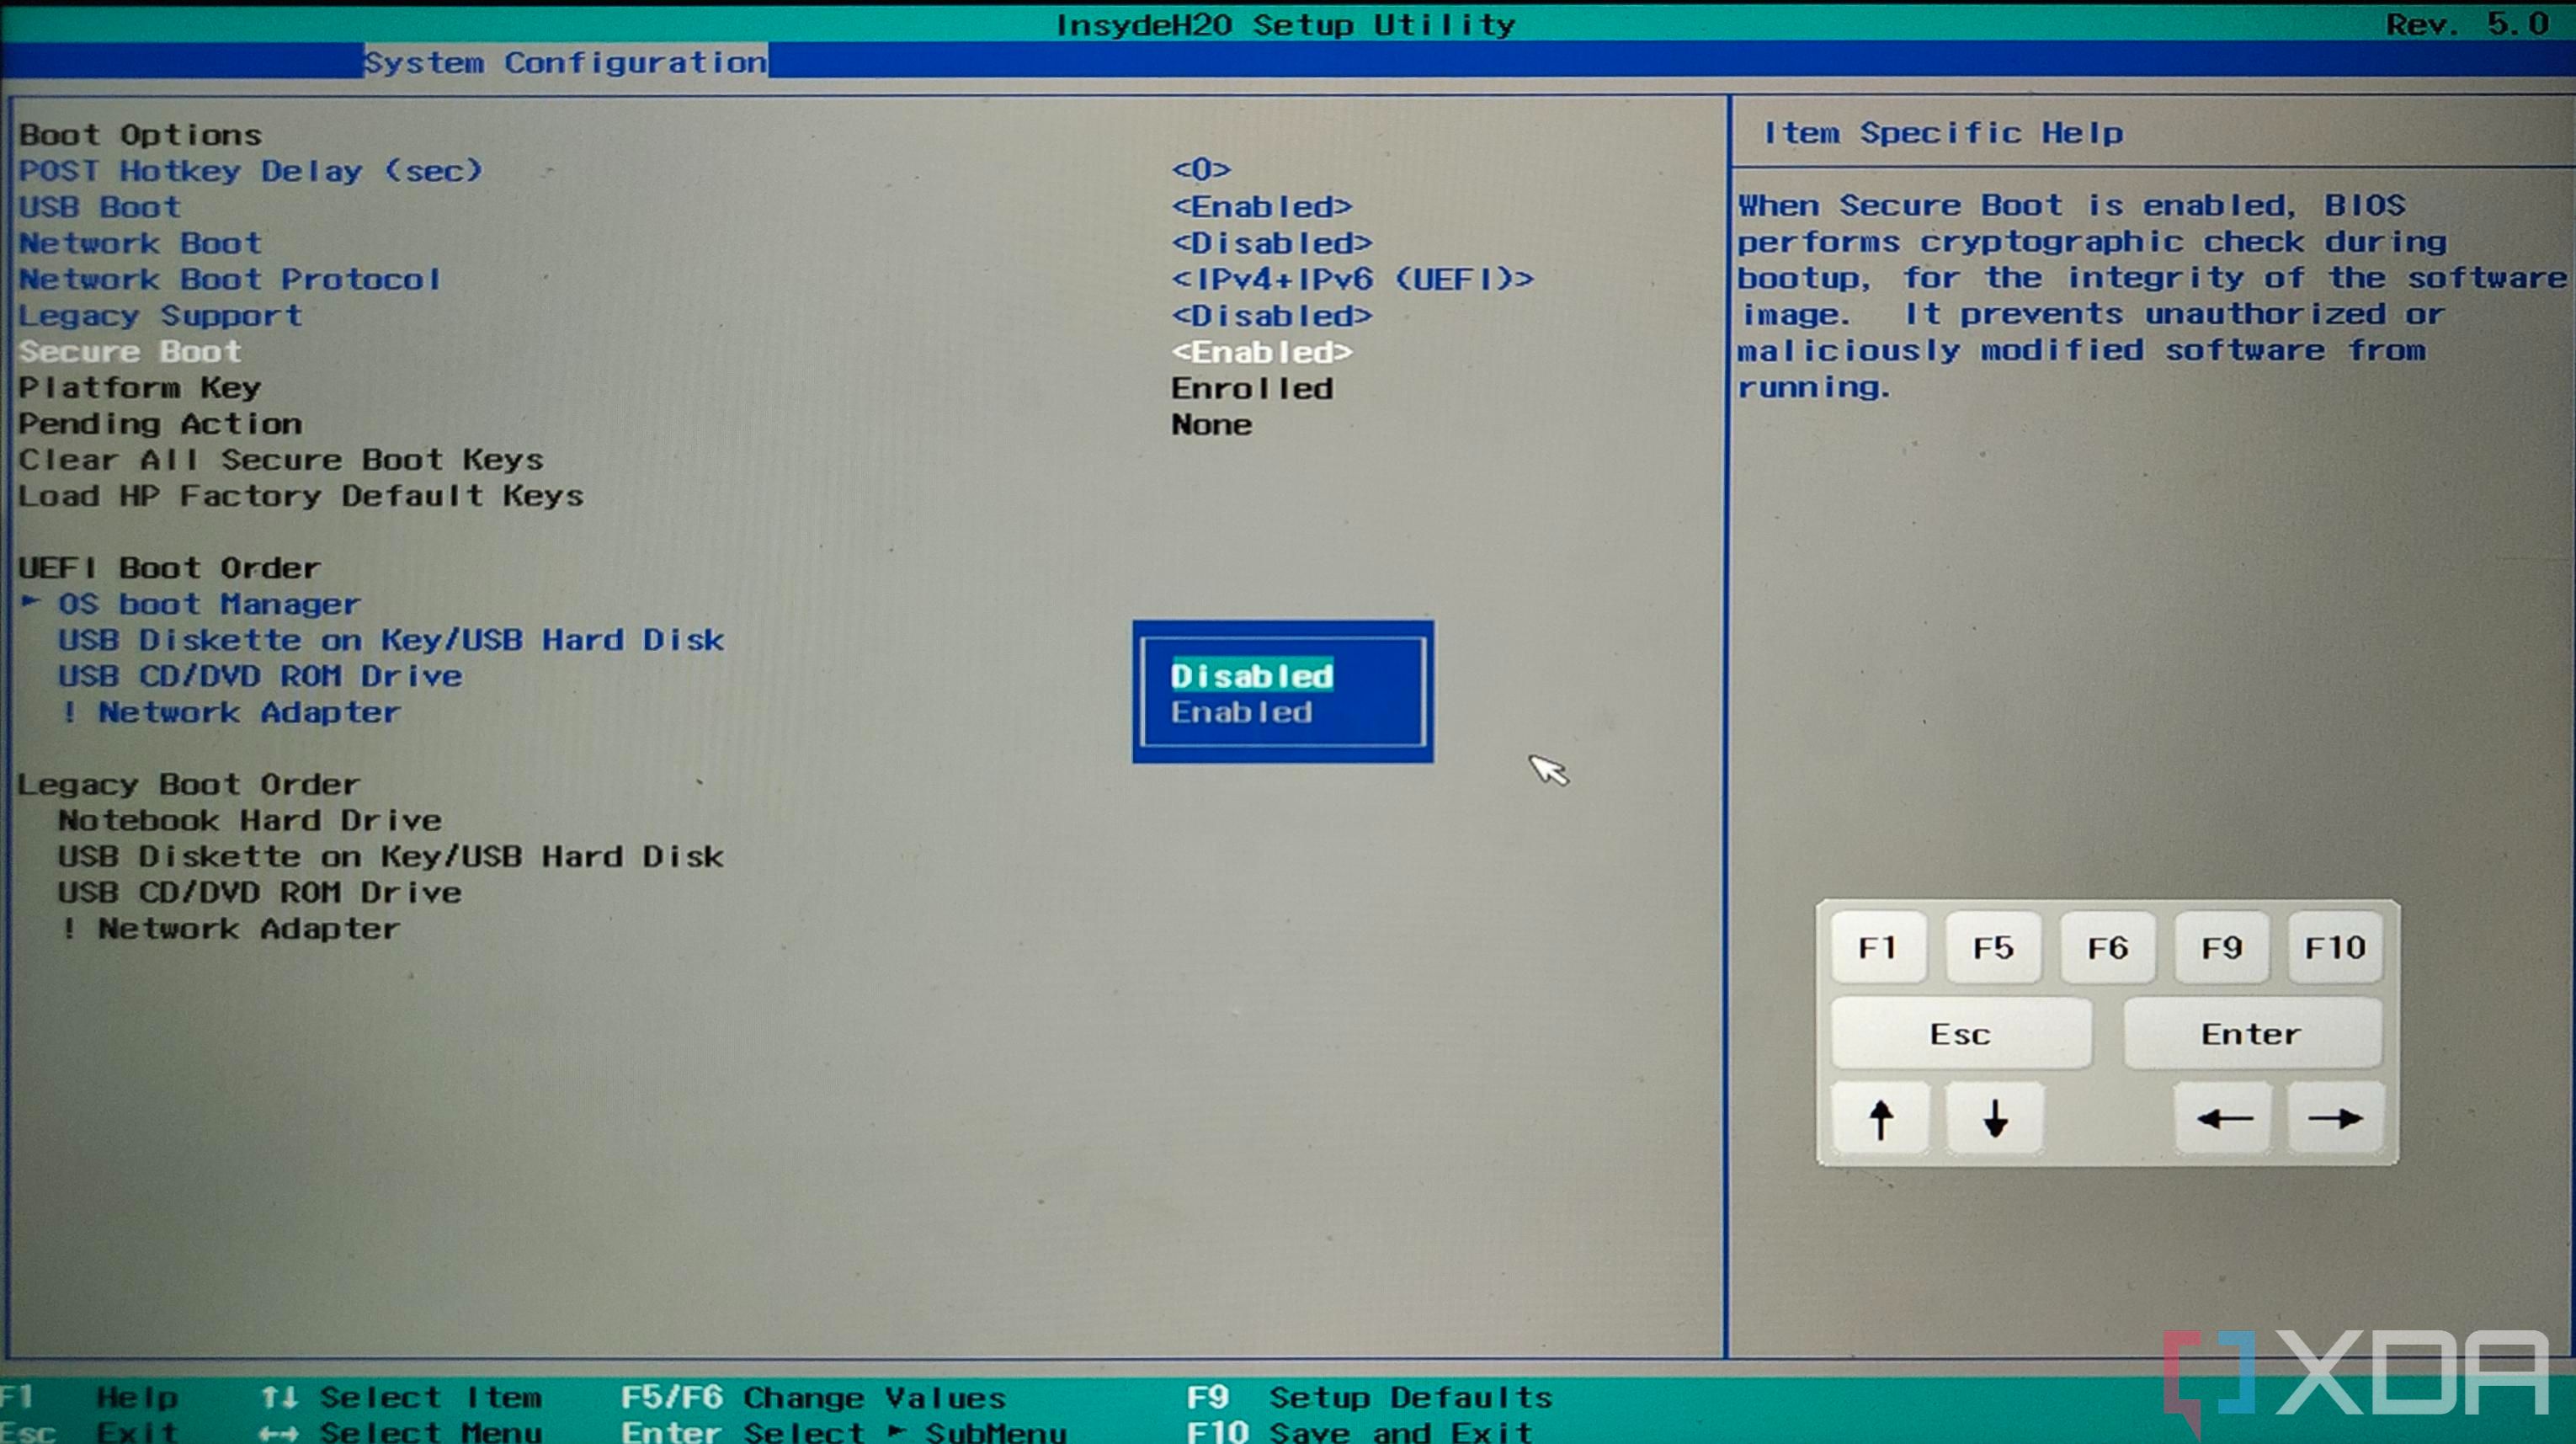 Скриншот настроек BIOS ПК с возможностью отключения безопасной загрузки